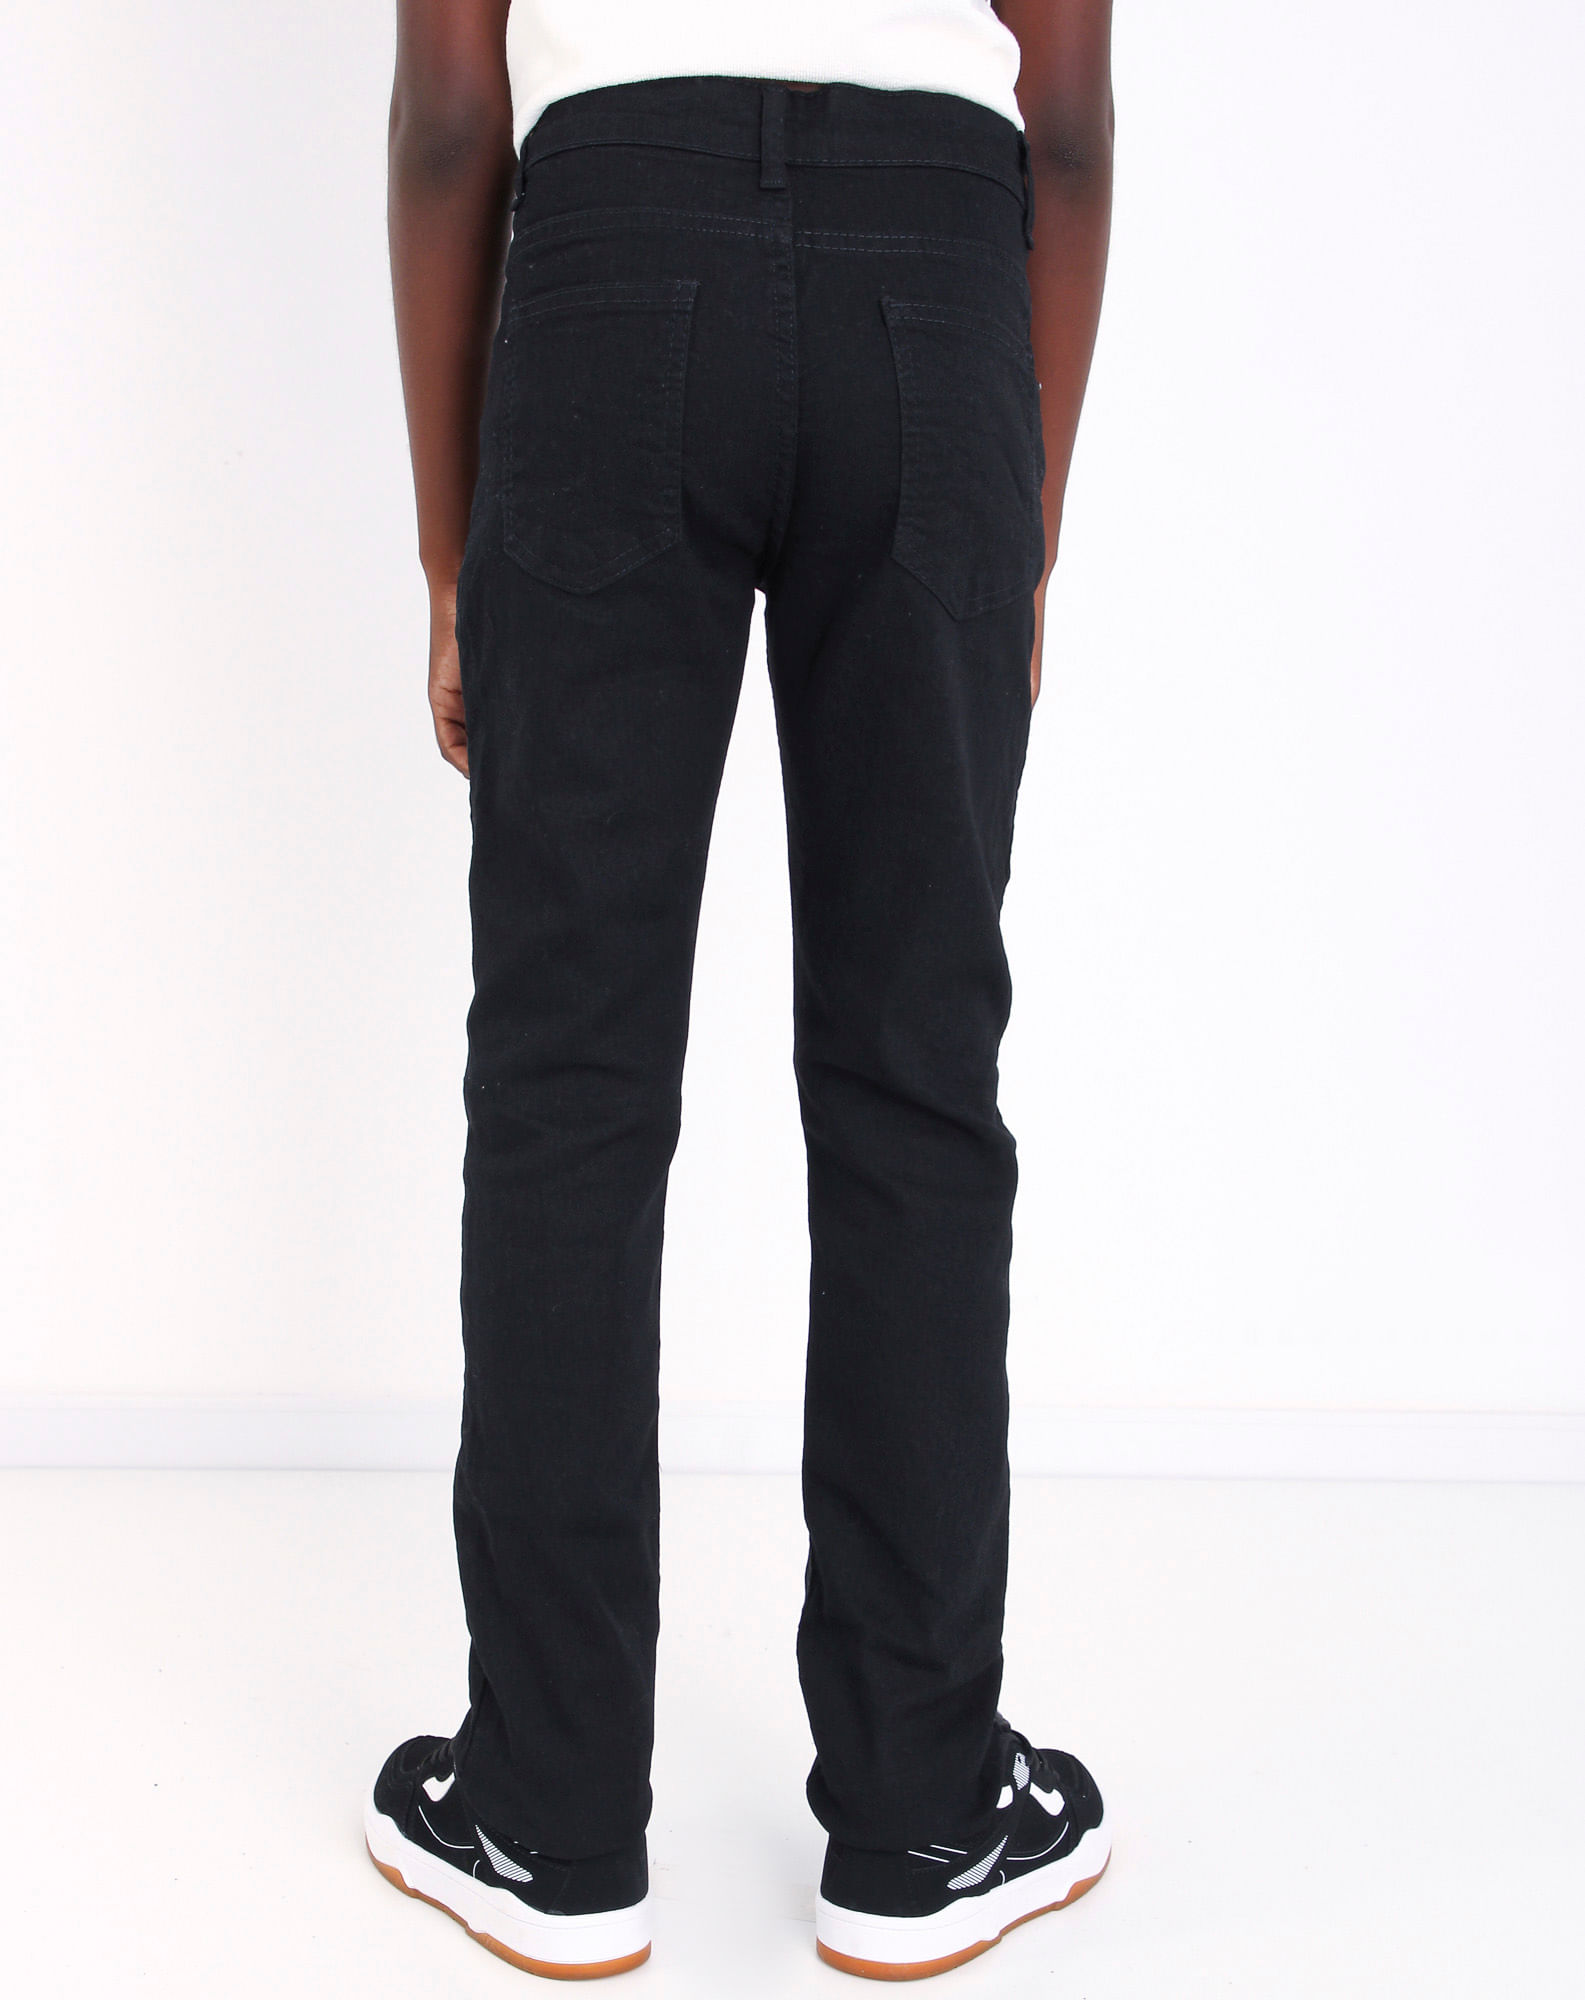 698607001 calça jeans black juvenil menino black 10 9b6